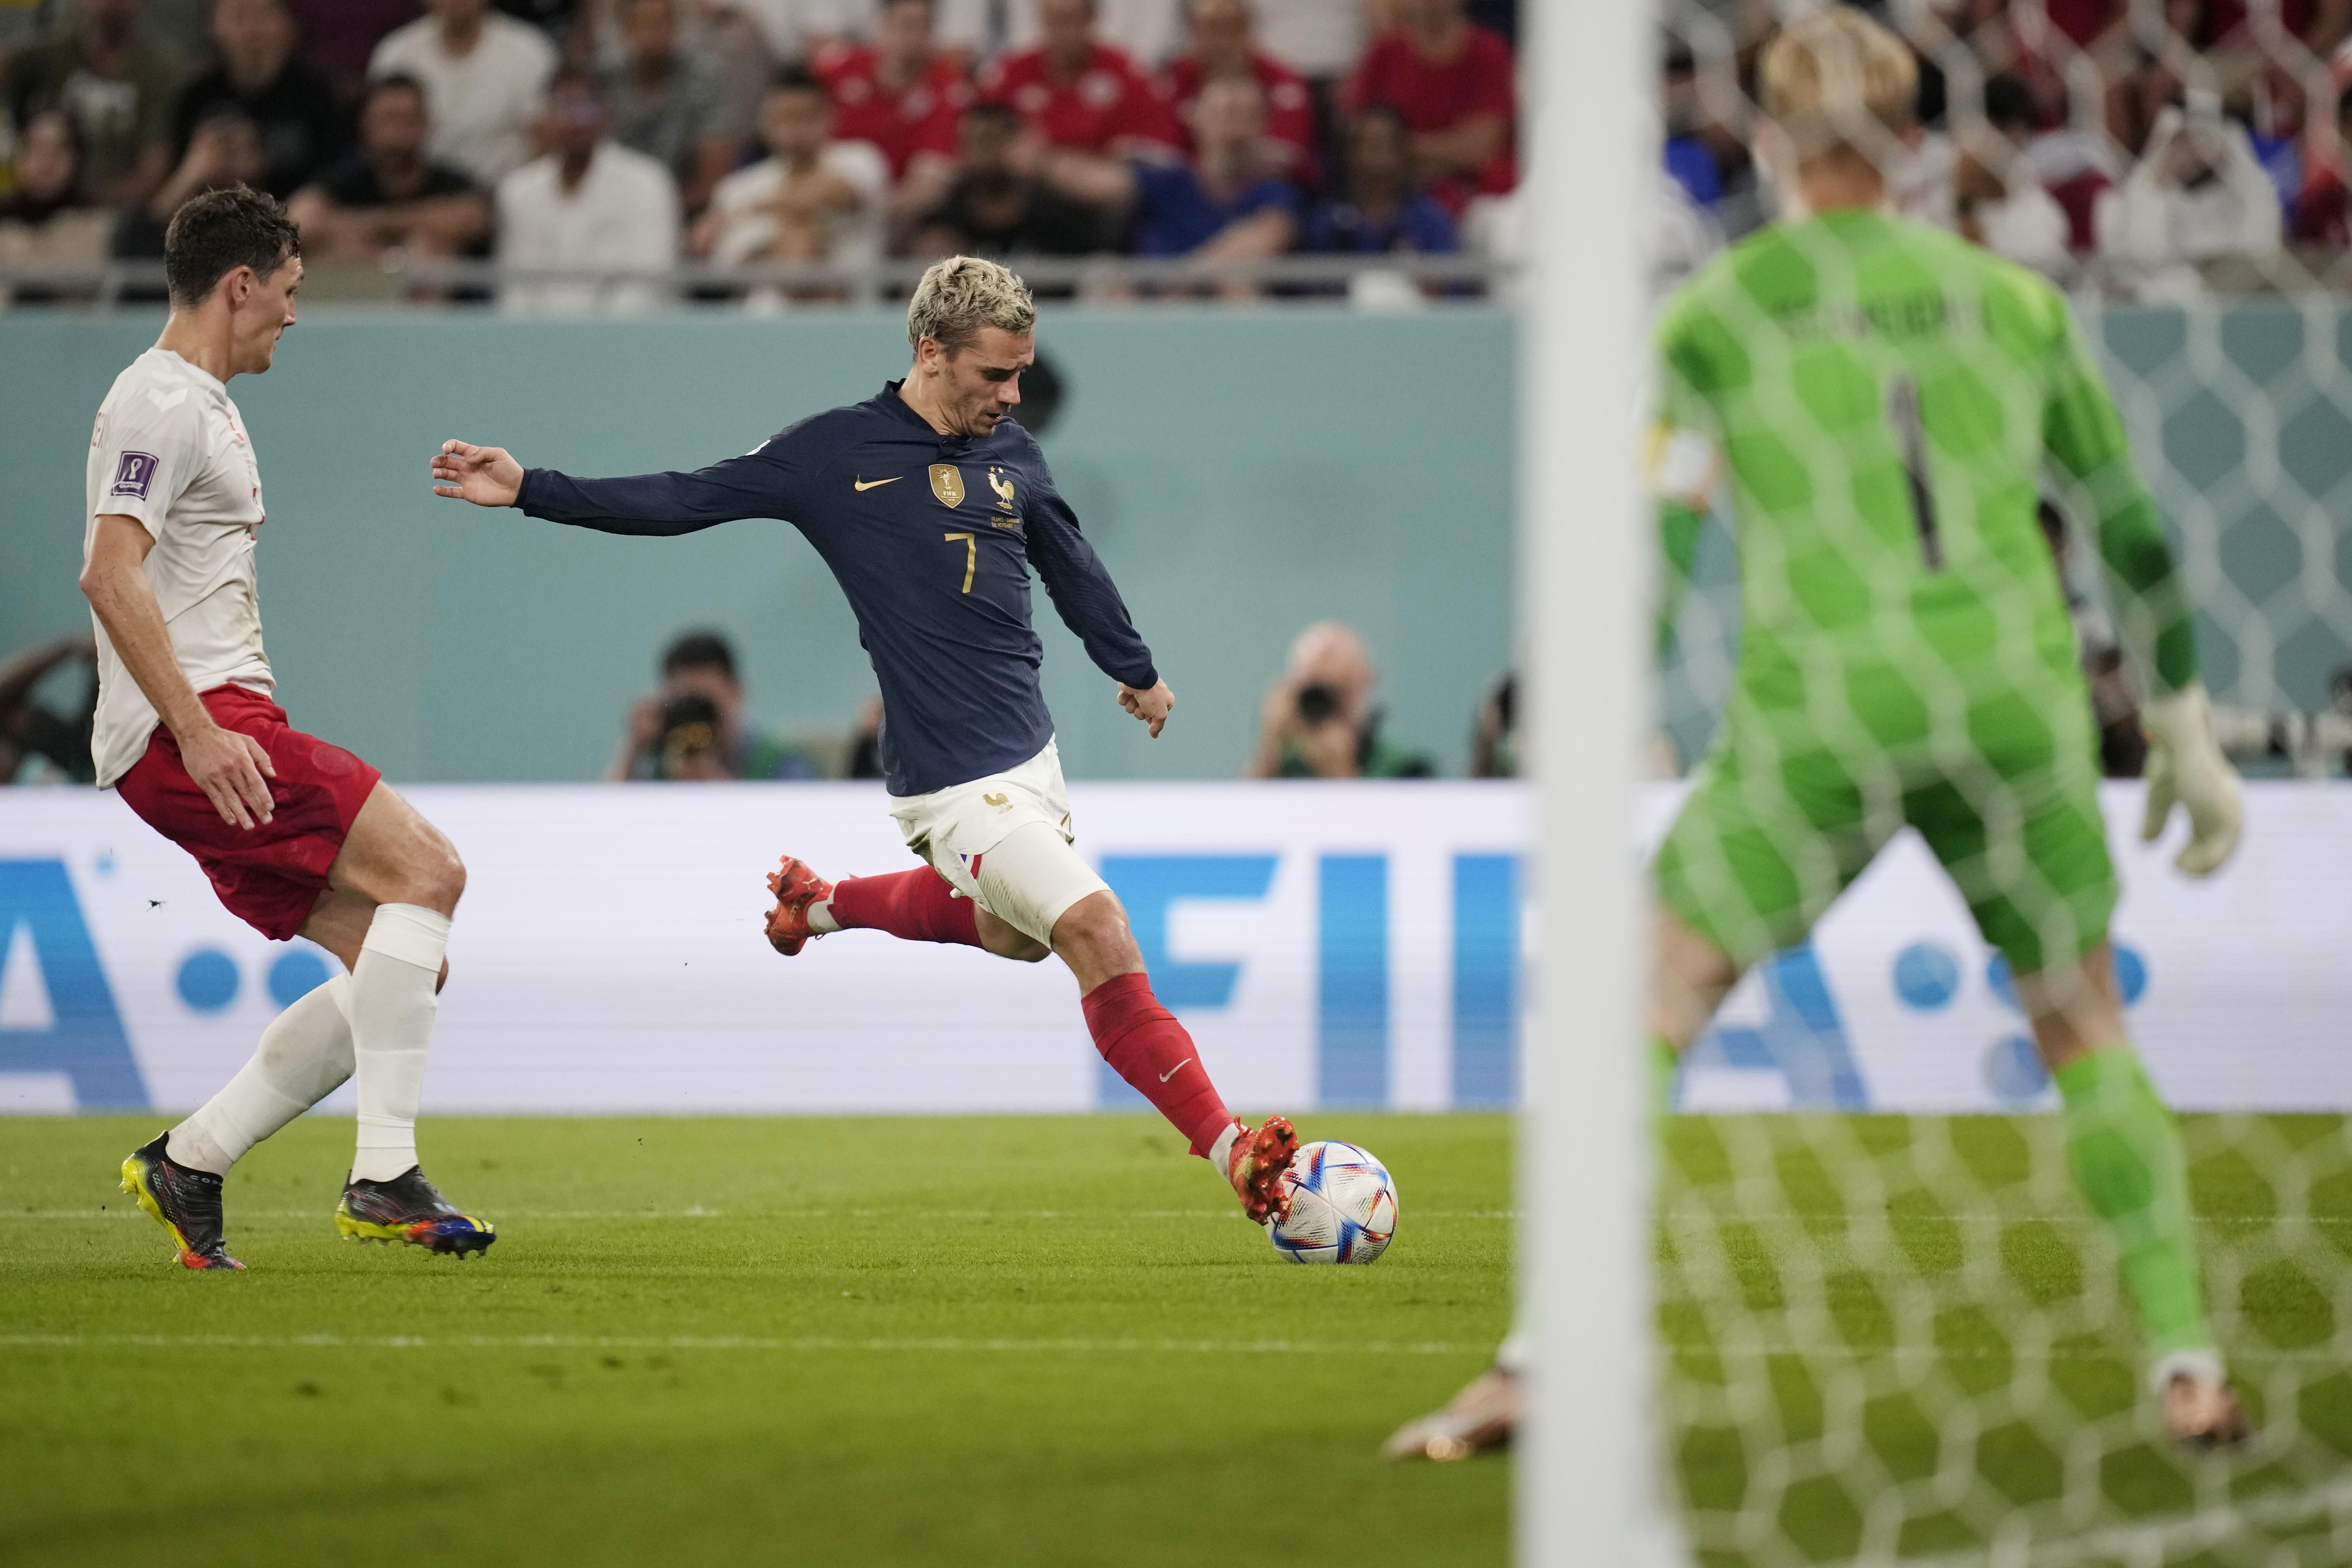 (ÖZET) Fransa - Danimarka maç sonucu: 2-1 (2022 Dünya Kupası D Grubu) | Mbappeyi durduramadılar